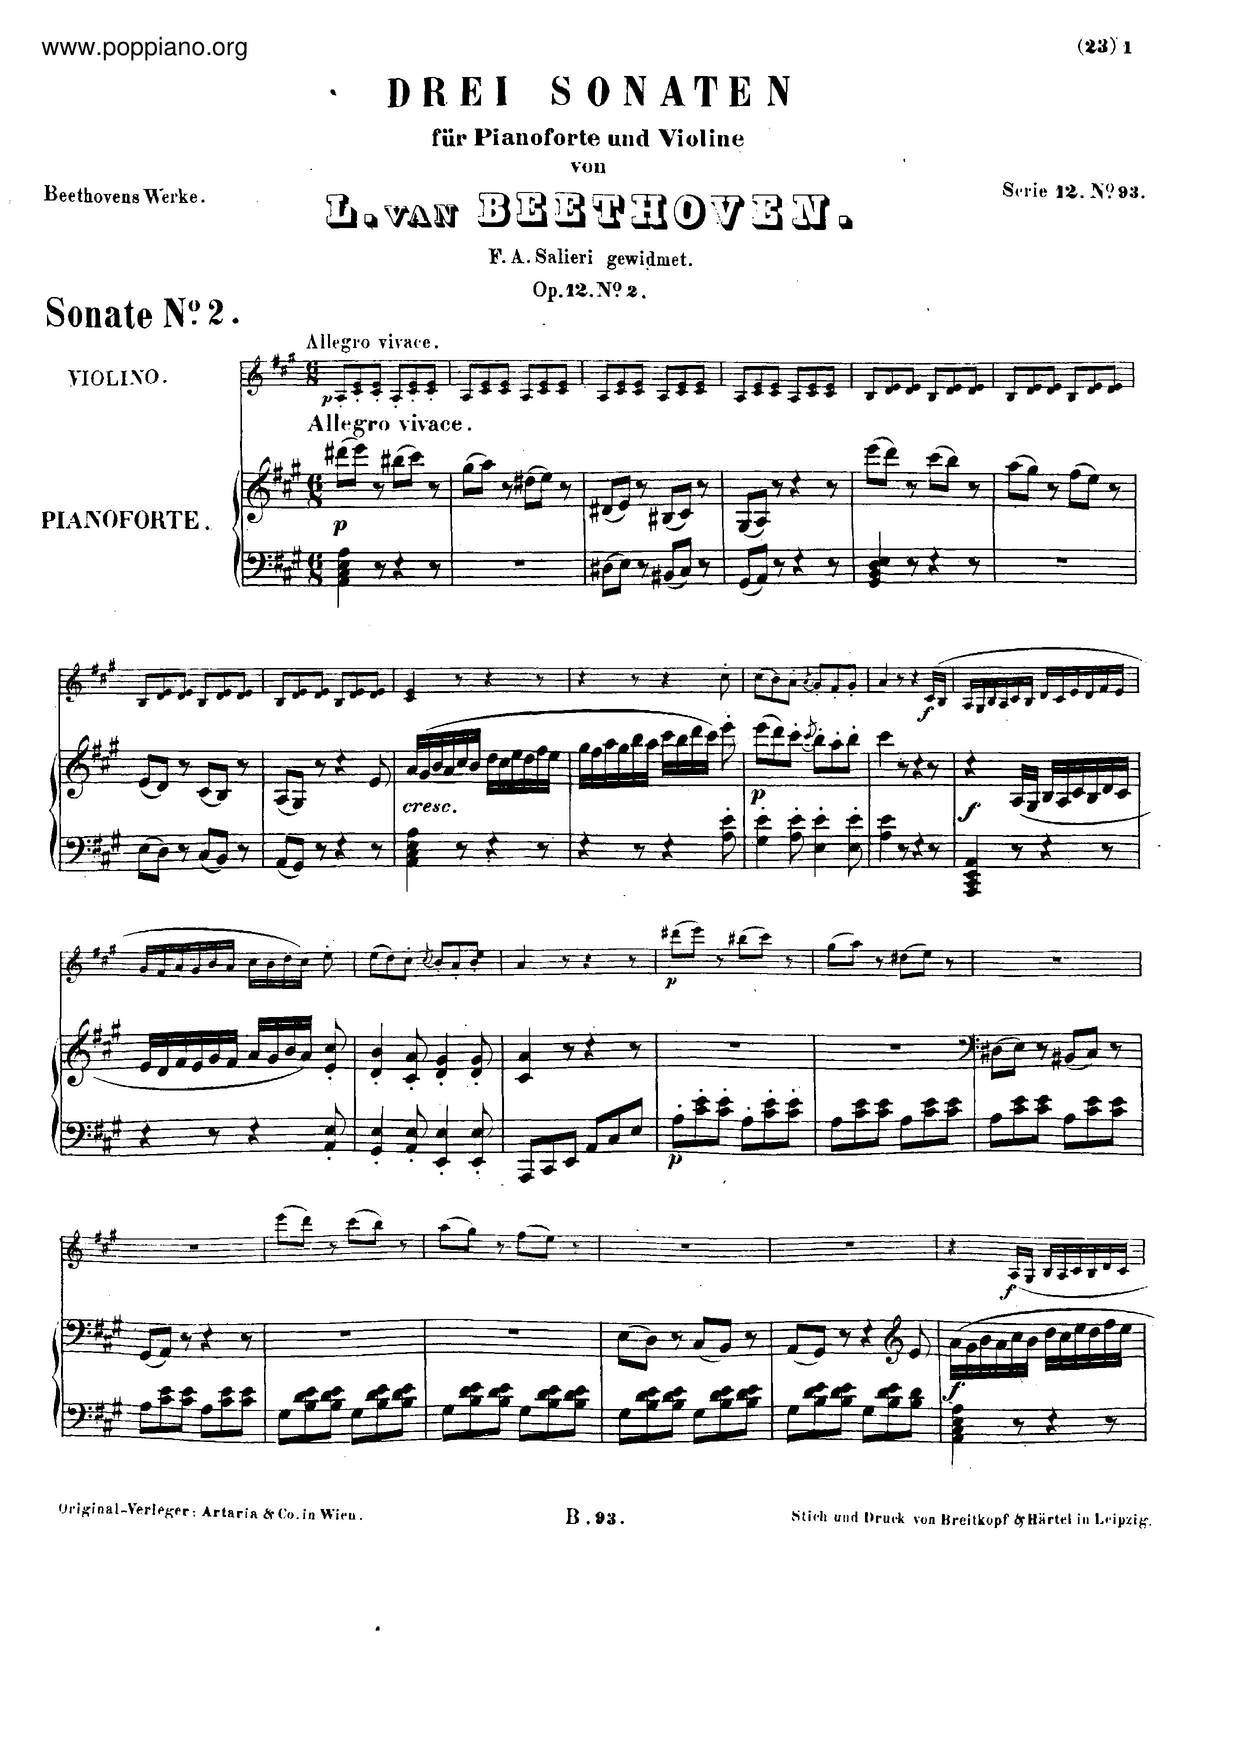 Violin Sonata No. 2, Op. 12 No. 2琴谱